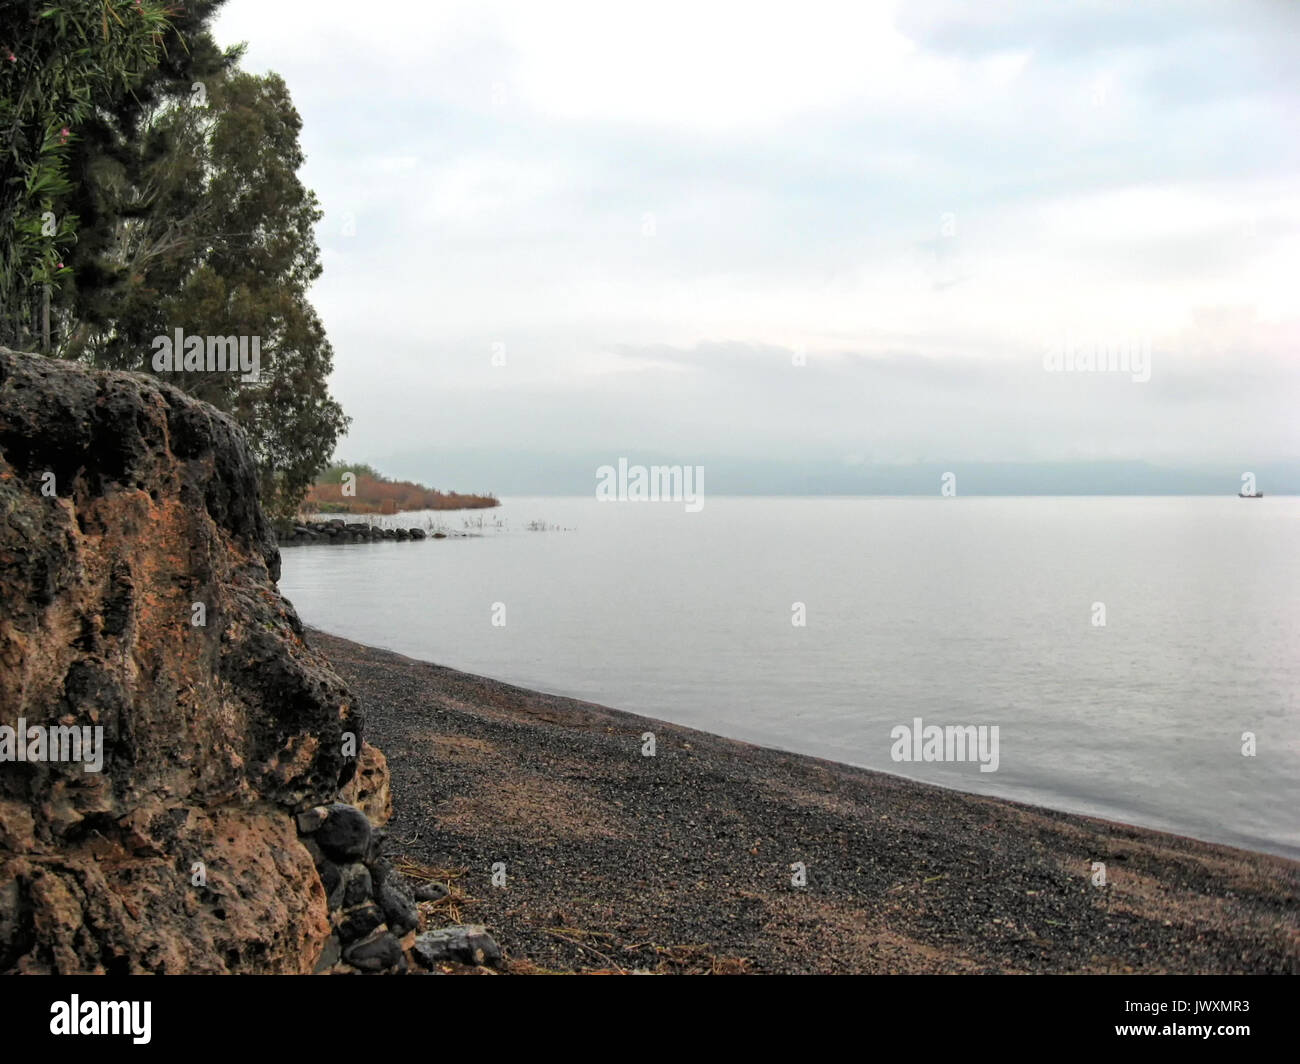 Scura roccia di basalto linee la riva occidentale del Mare di Galilea a Tabgha in Israele. Foto Stock